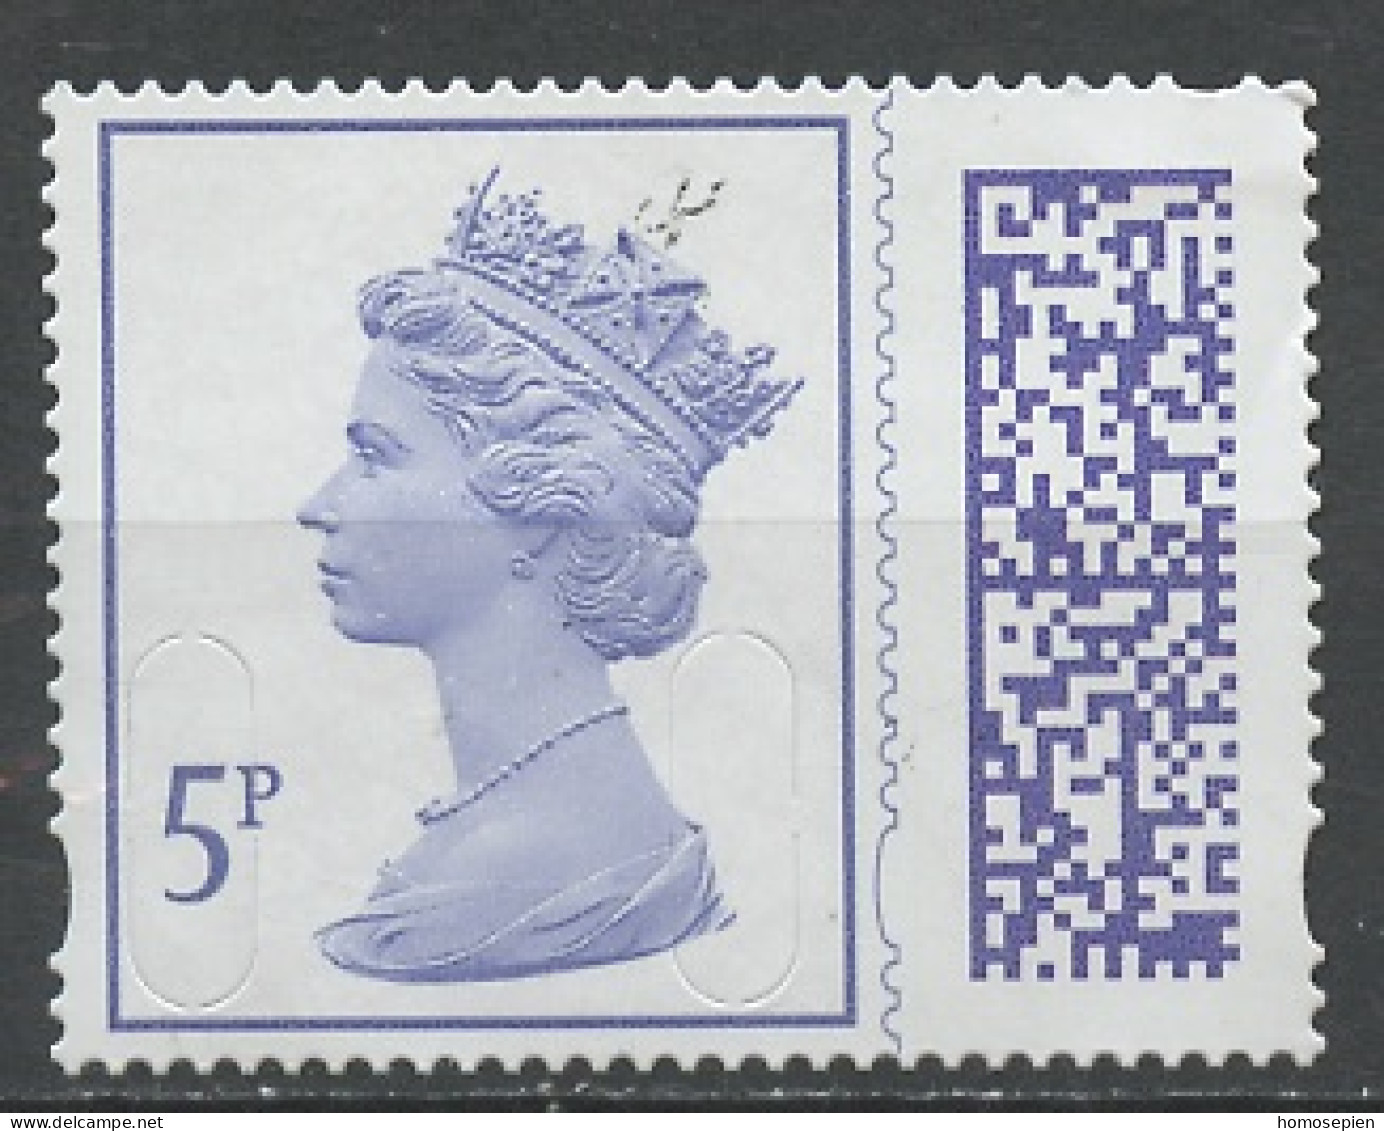 Grande Bretagne - Great Britain - Großbritannien 2022 Y&T N°(2) - Michel N°(?) Nsg - 5p Reine Elisabeth II - Unclassified